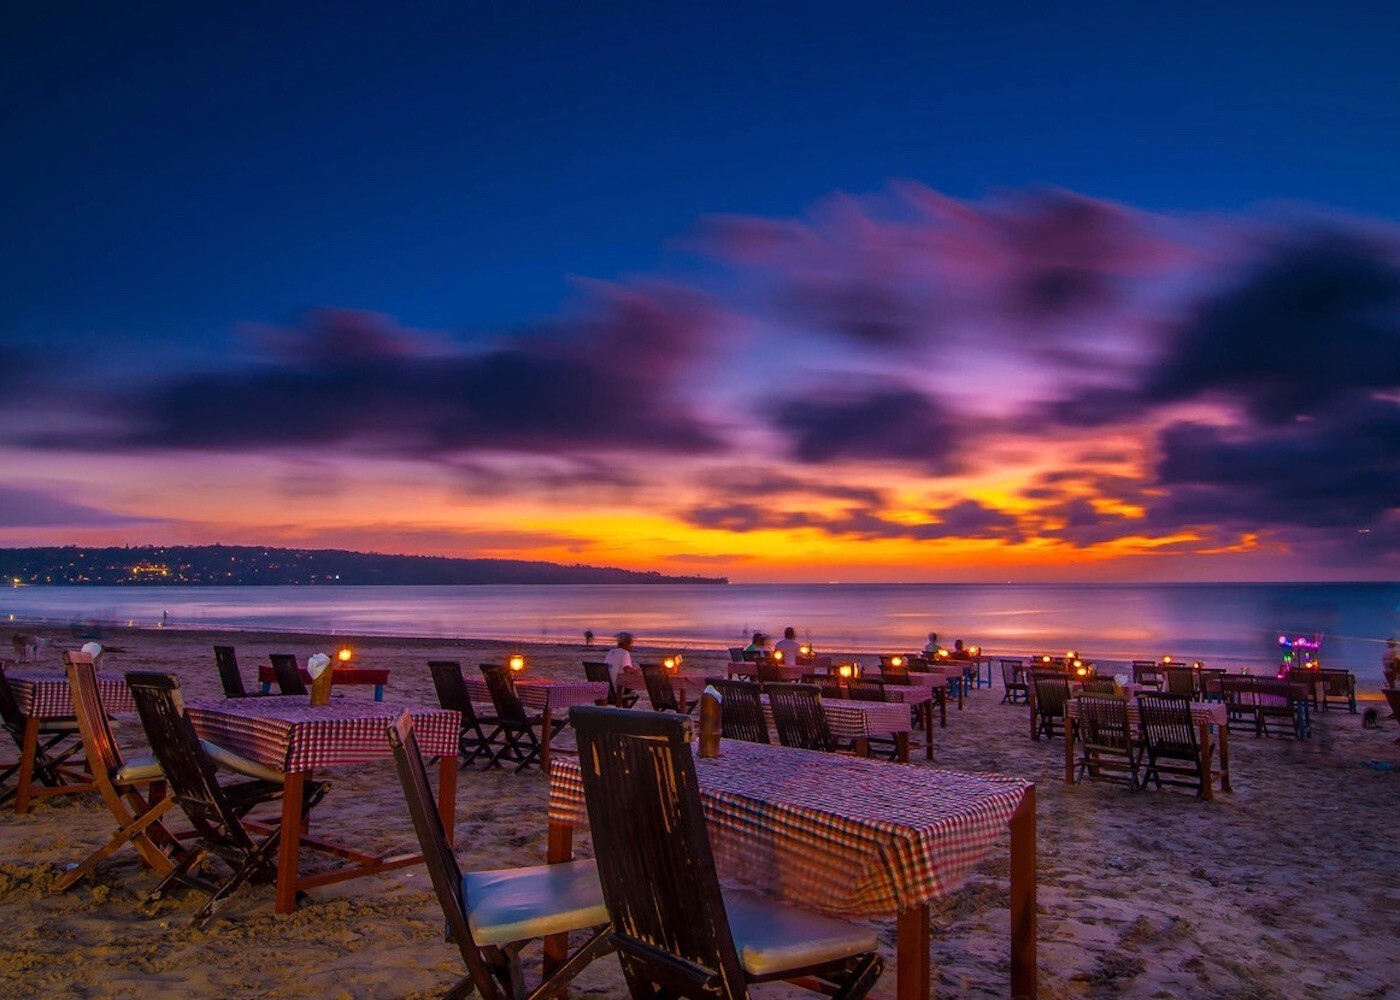 Jimbaran-Bay-Beach-seafood-BBQ-sunset-Bali-Indonesia.jpg